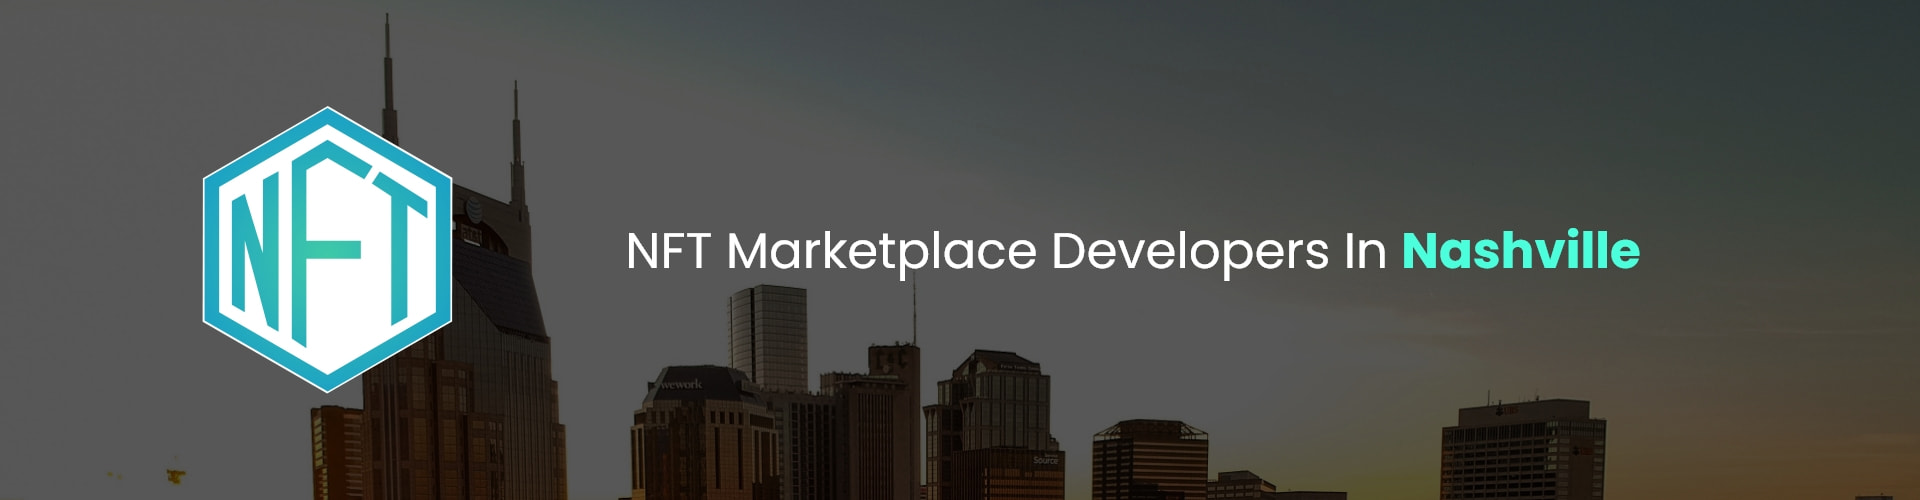 hire nft marketplace developers in nashville